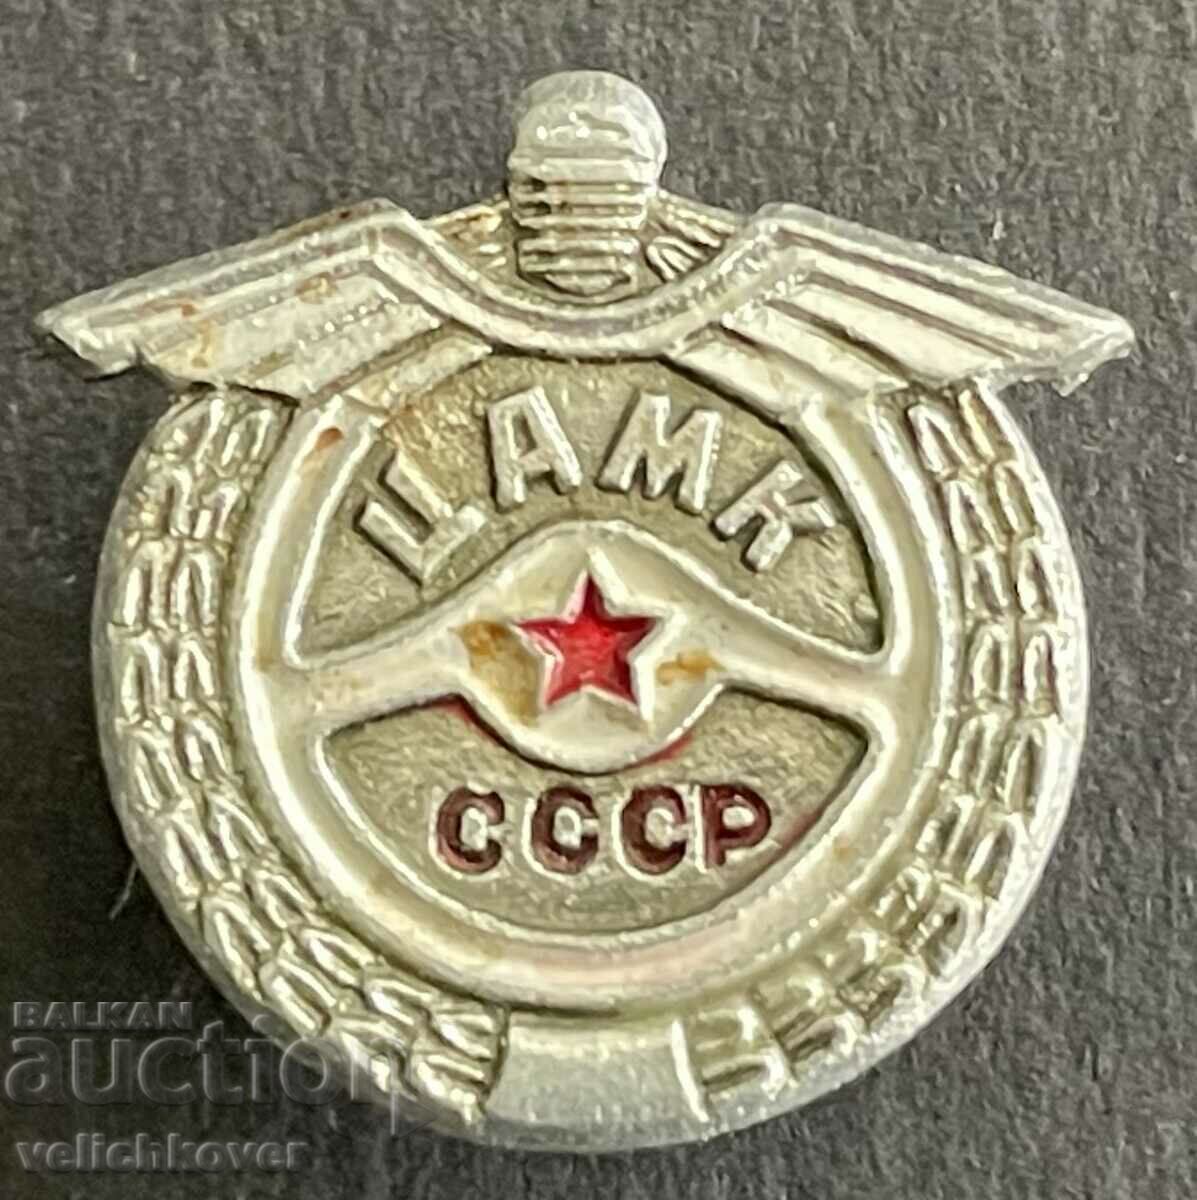 37727 USSR insignia TsAMK Central Army Motorcycle Club